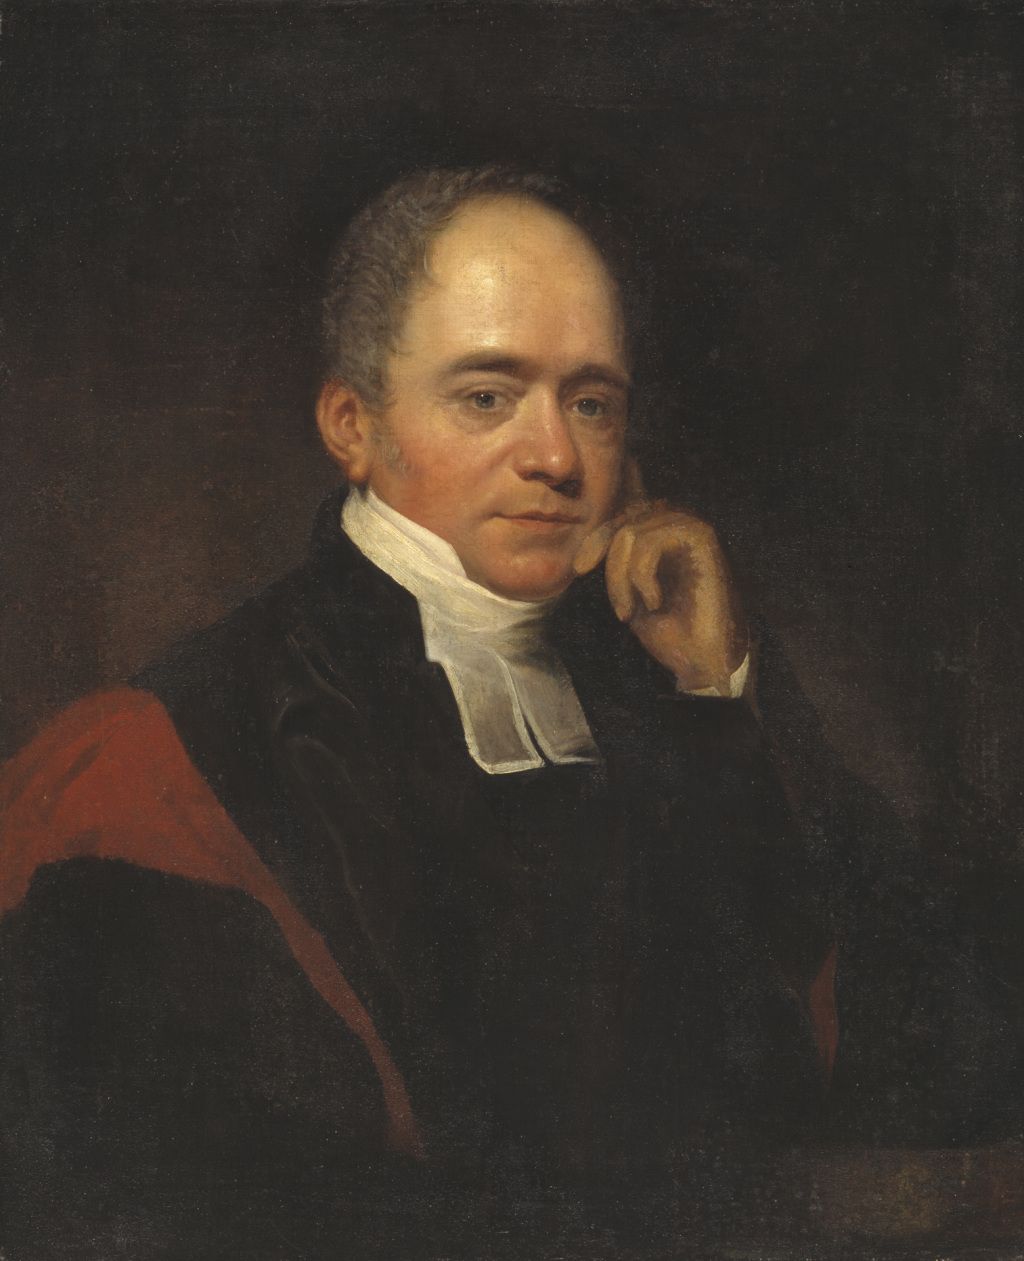 Edward Coplestone, Bishop of Llandaff (1776-1849)